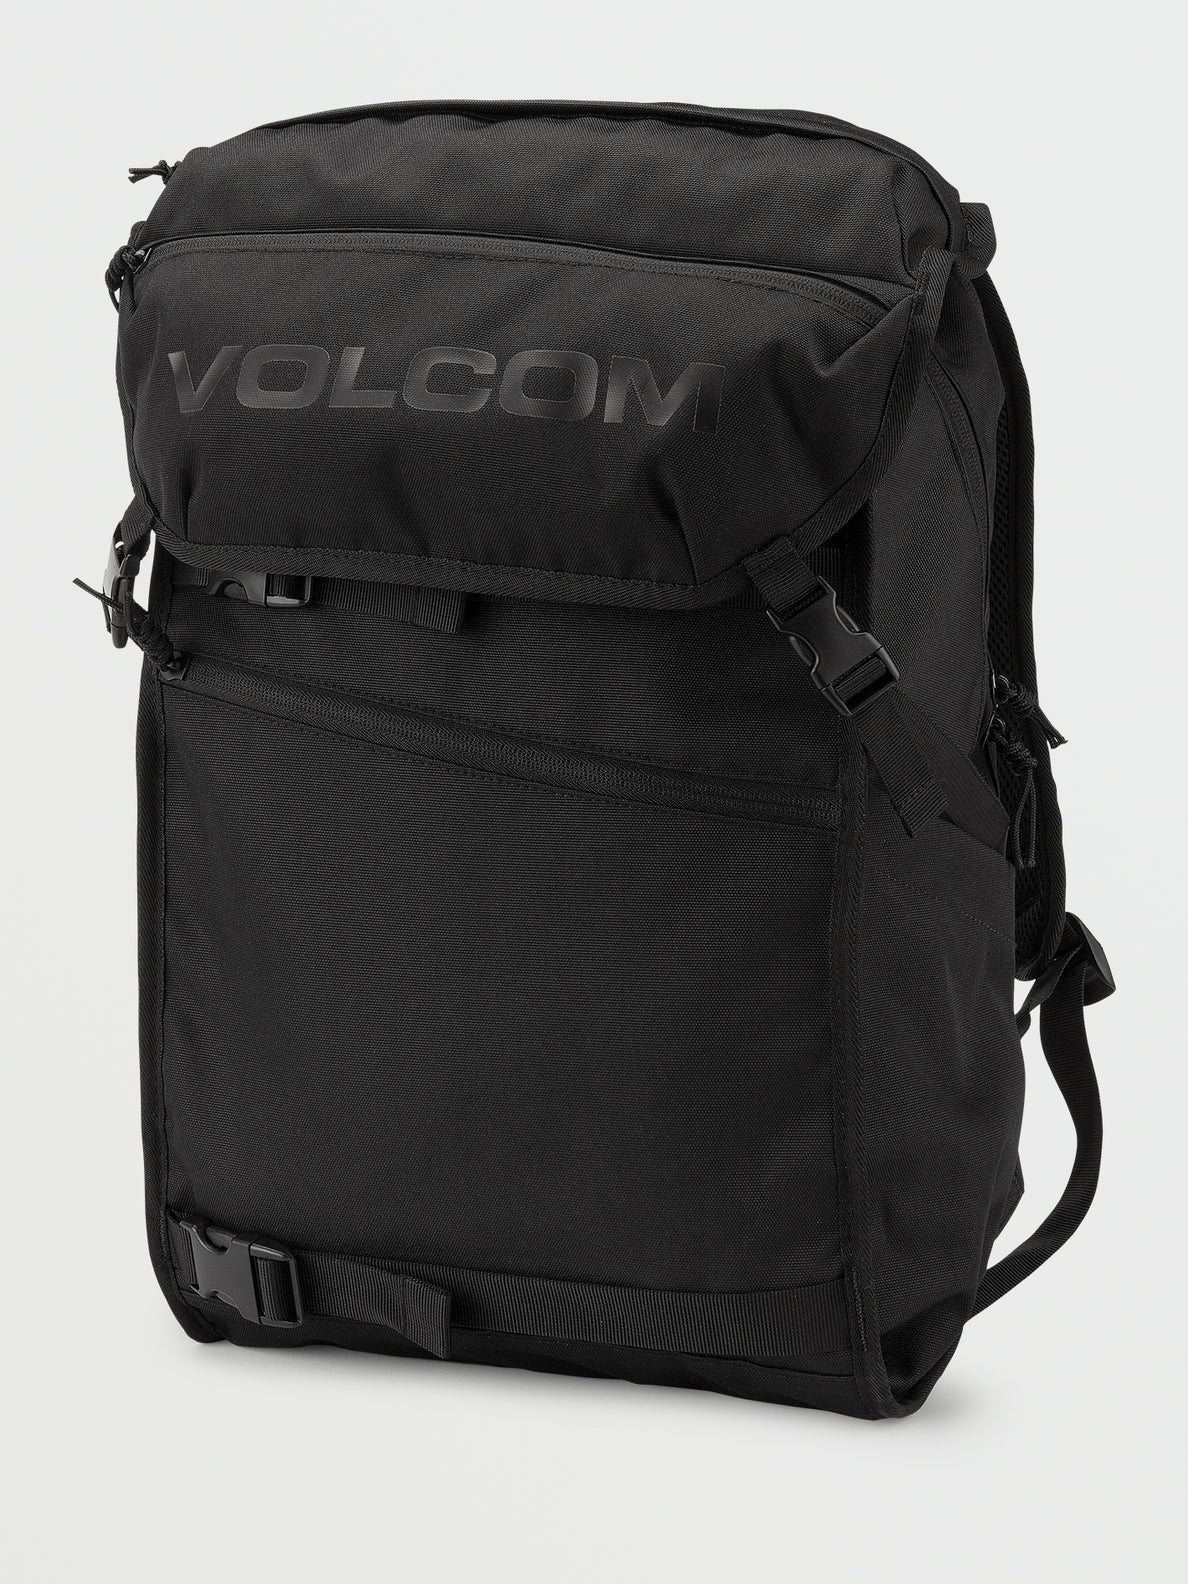 Volcom Substrate Backpack - Black on Black (D6522206_BKB) [F]